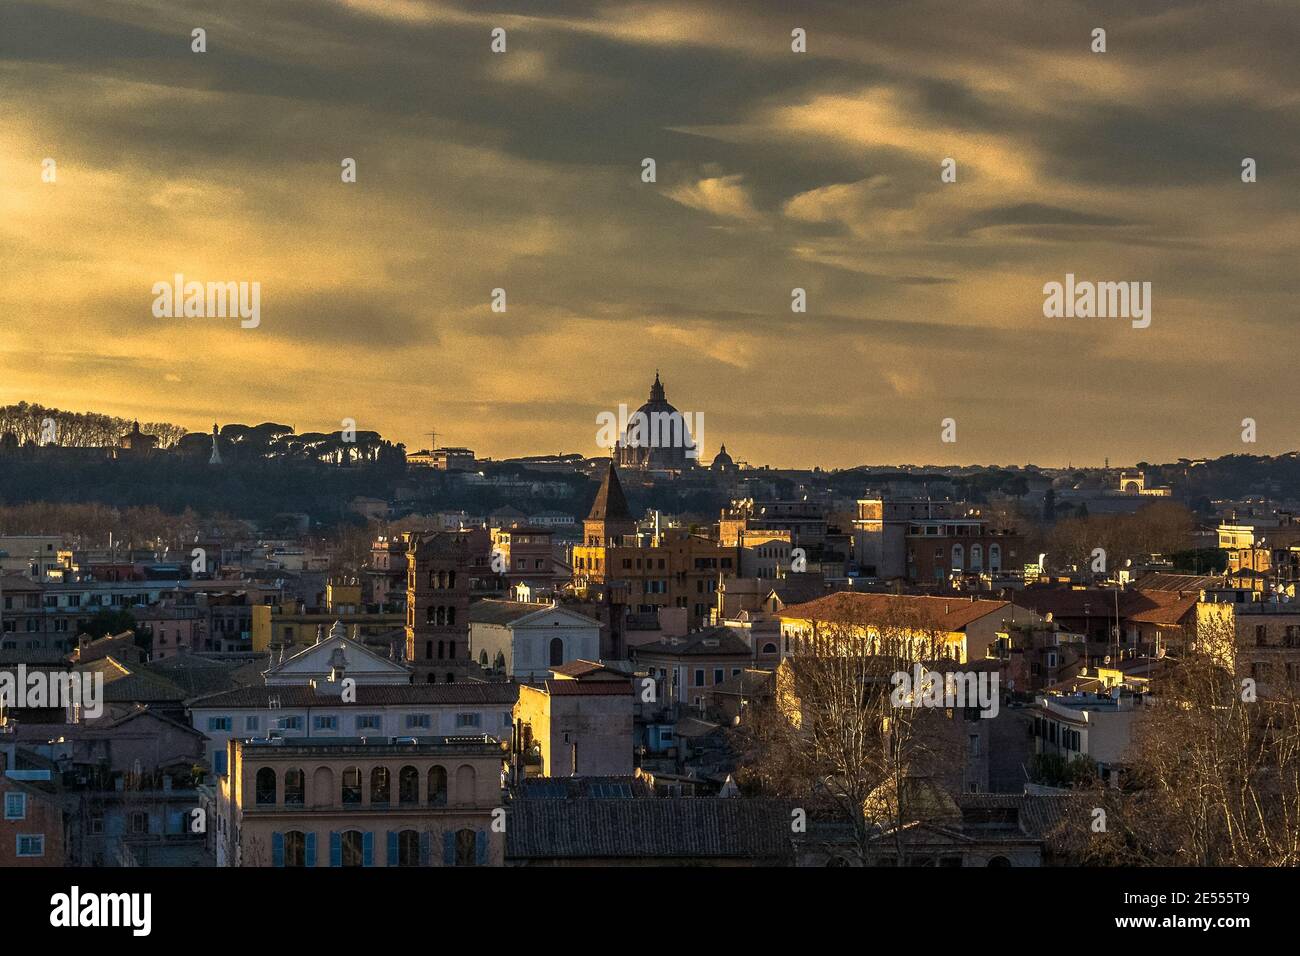 Rom, die Hauptstadt Italiens, ist eine kosmopolitische Großstadt, die fast 3.000 Jahre Kunstgeschichte, Architektur und Kultur vorweisen kann. Stock Photo